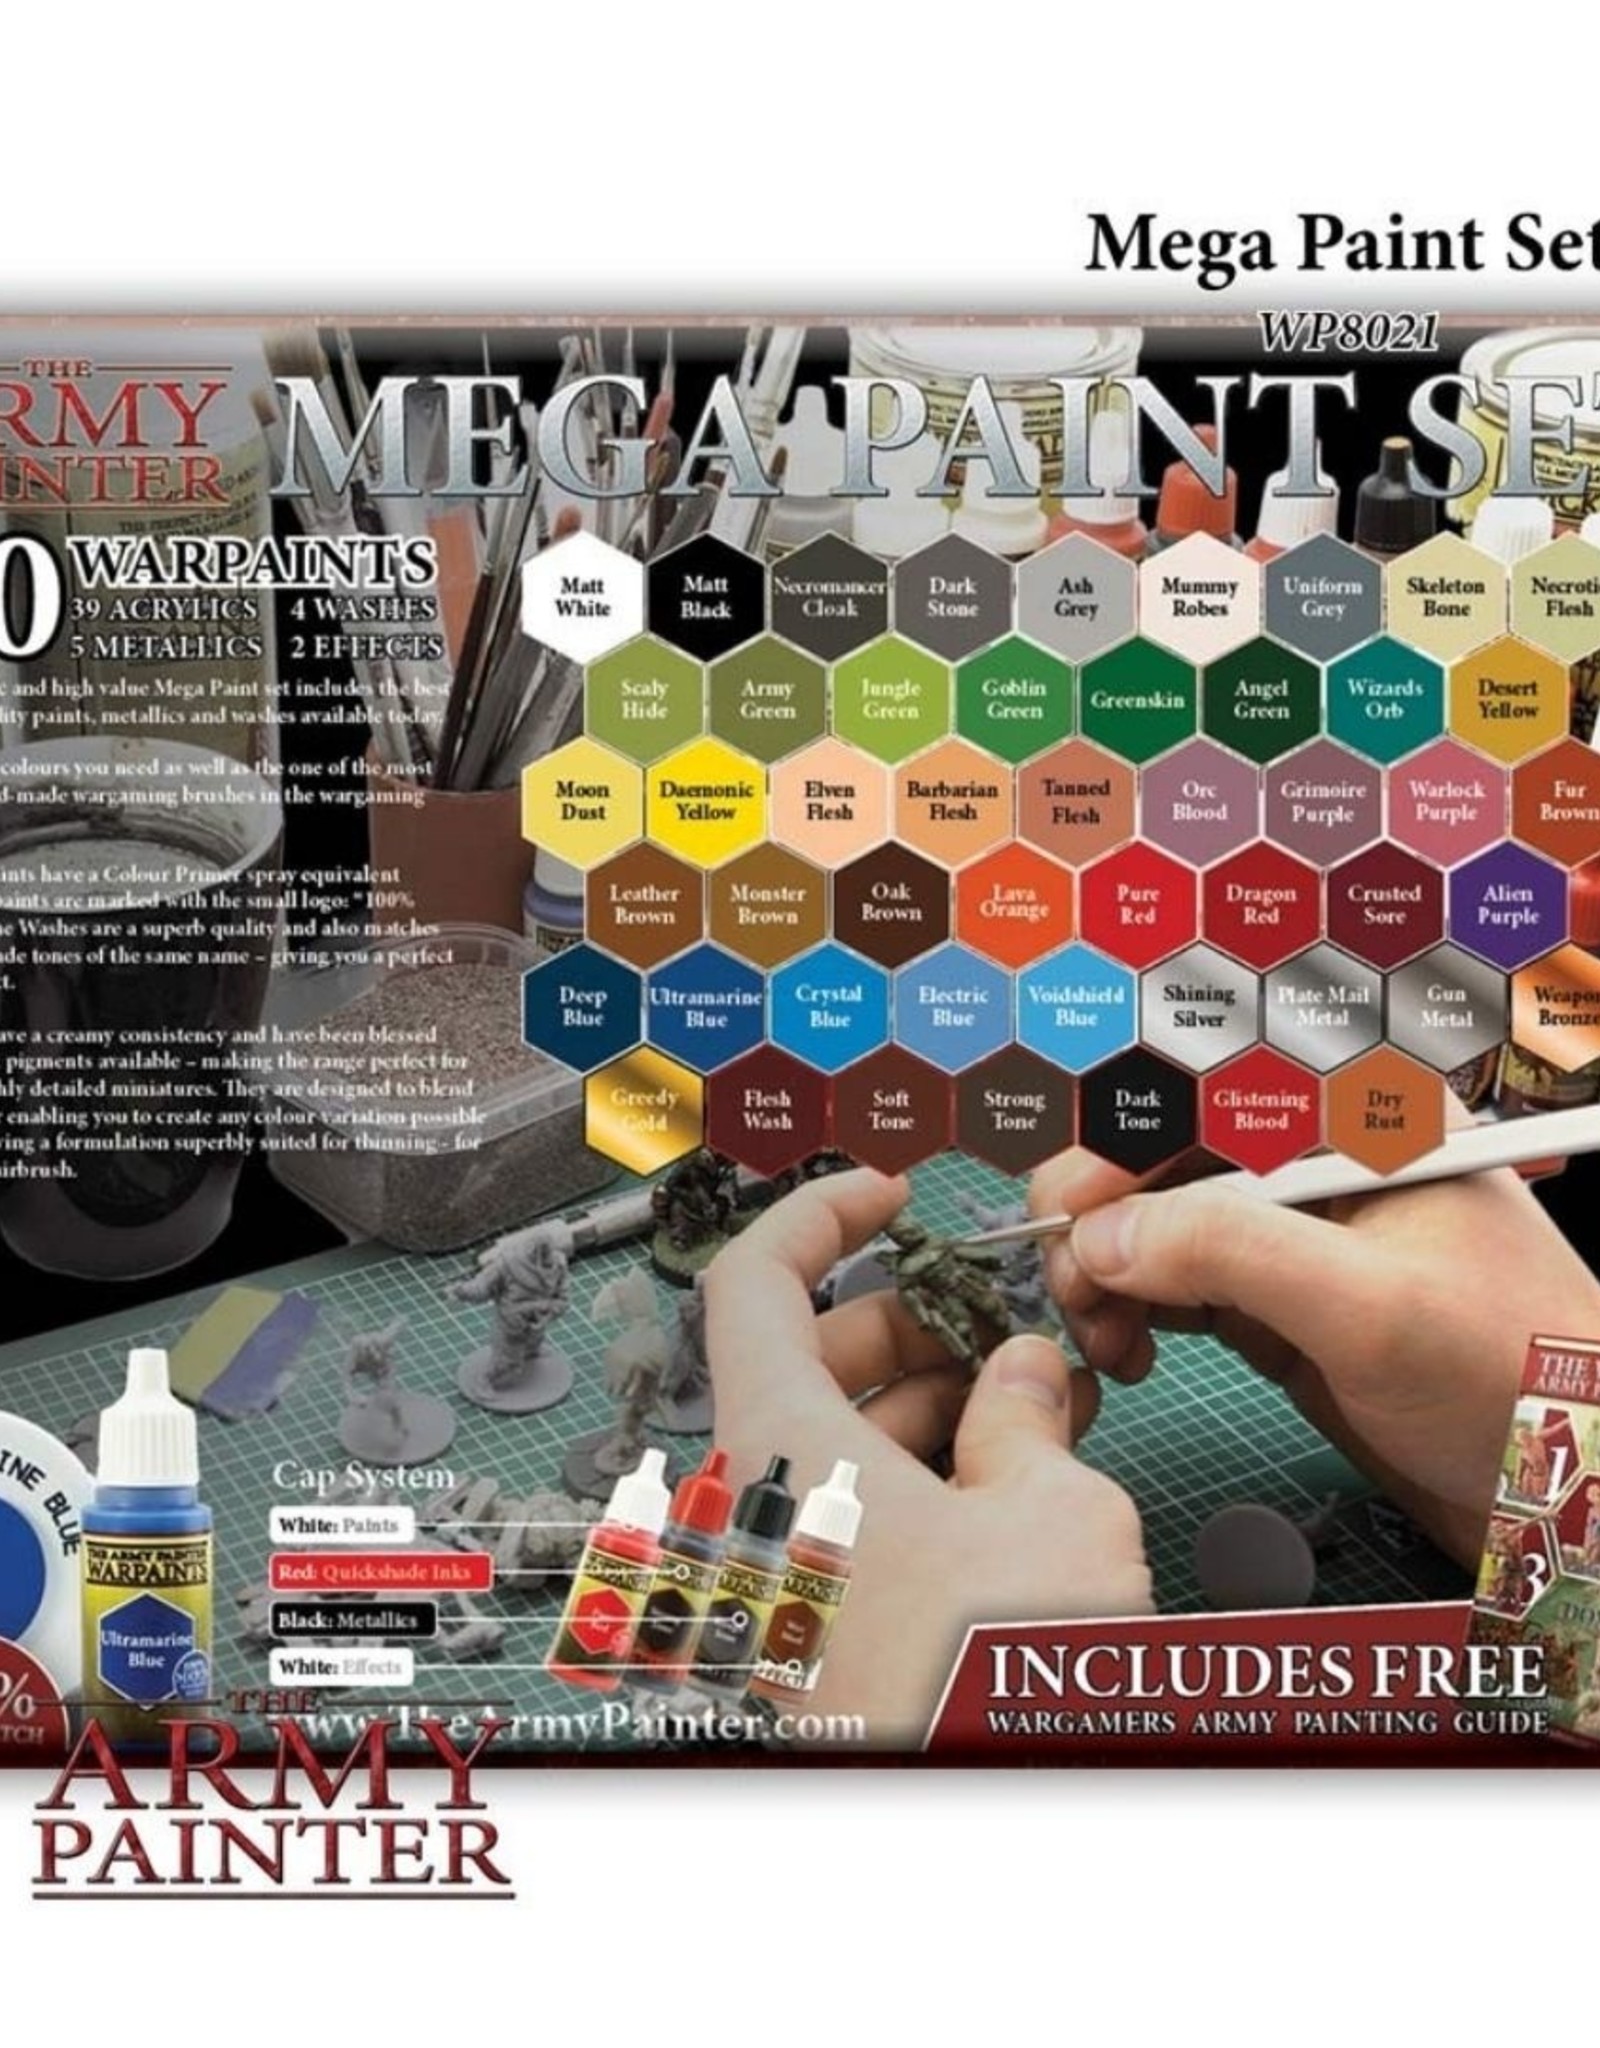 The Army Painter Mega Paint Set (2017)